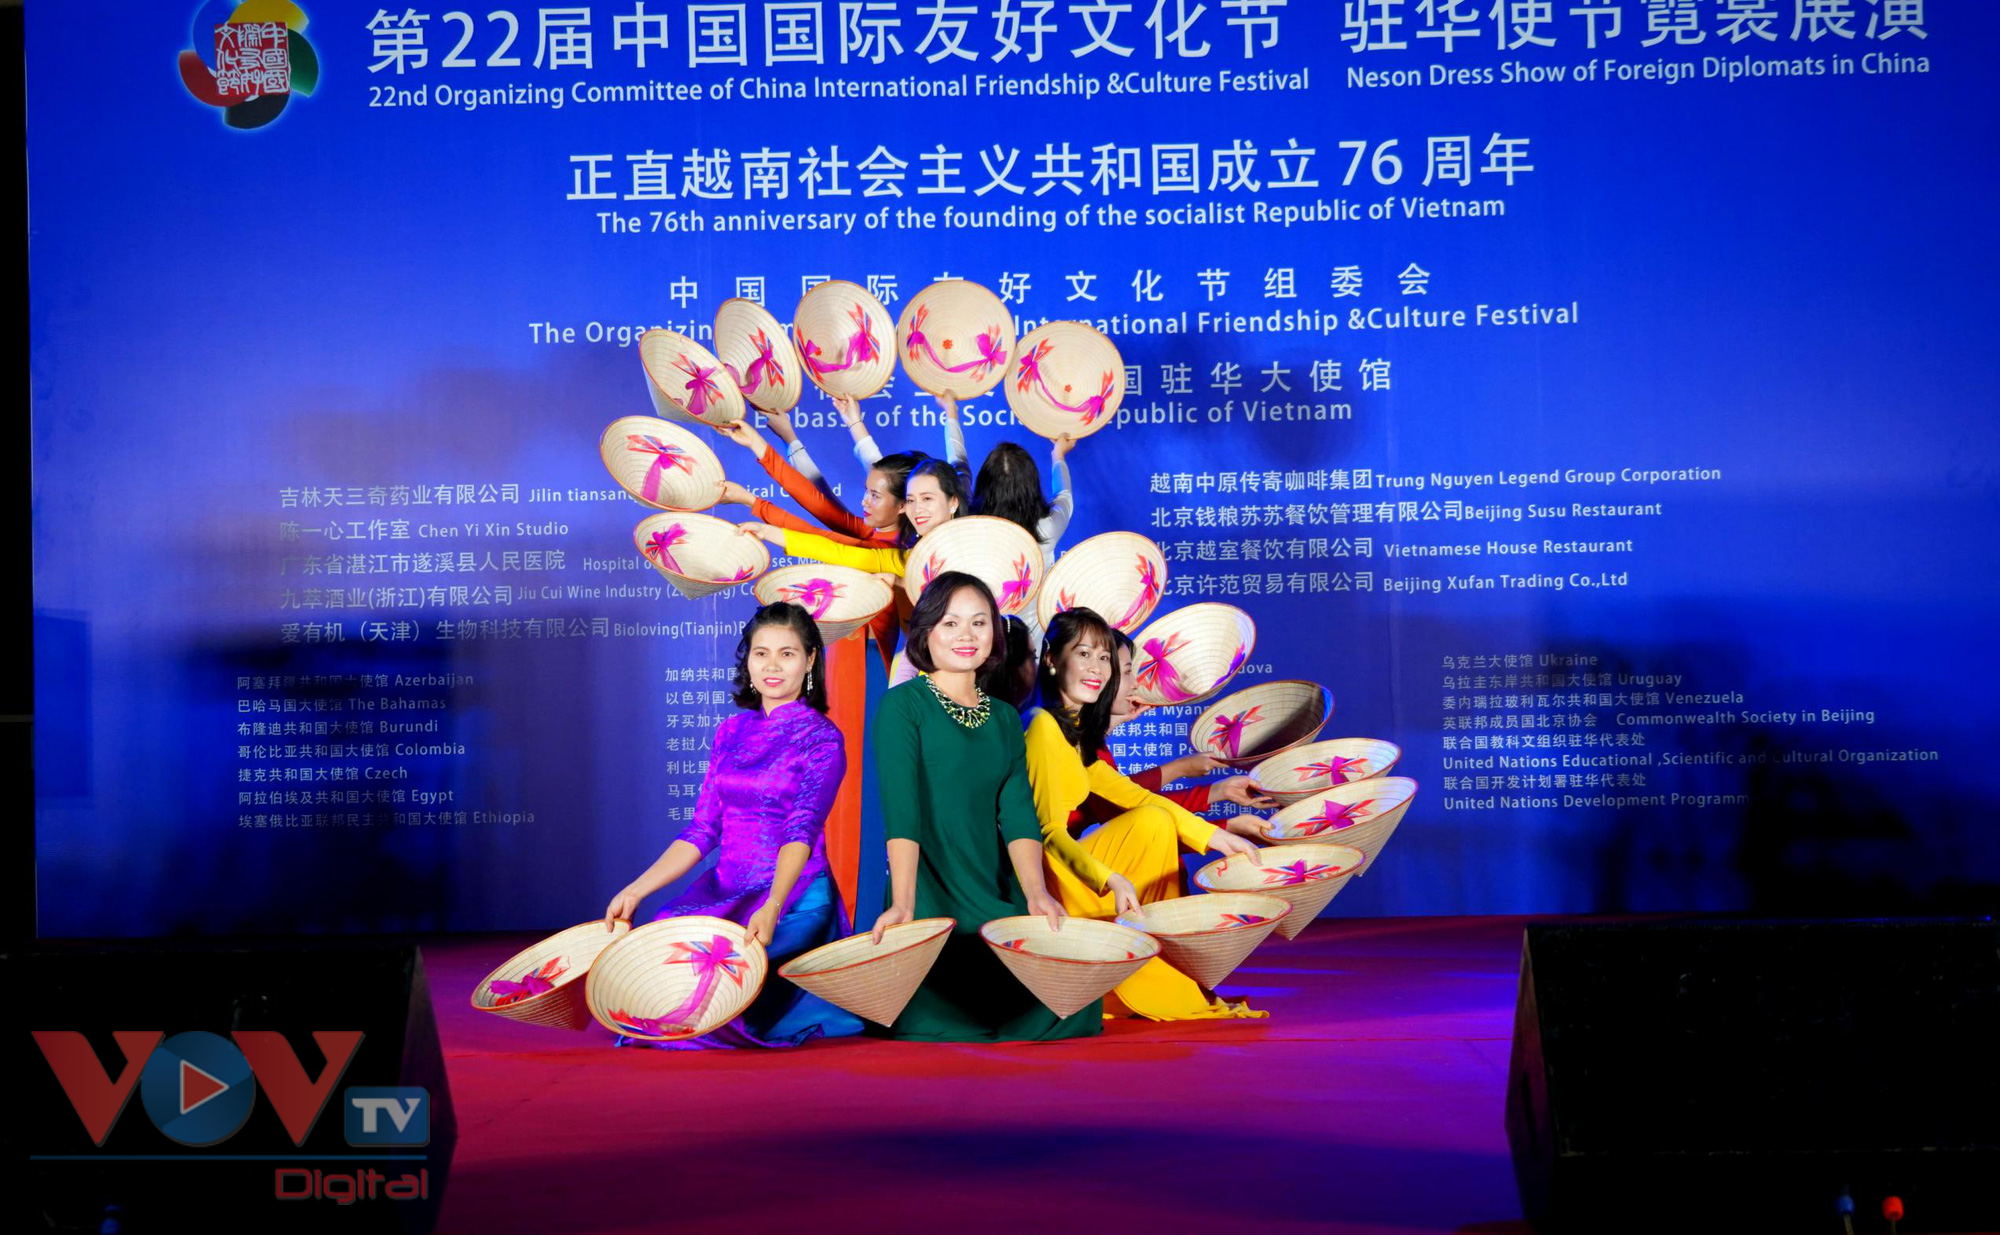 Giao lưu văn hóa nhân dịp Quốc khánh Việt Nam tại Trung Quốc - Ảnh 6.